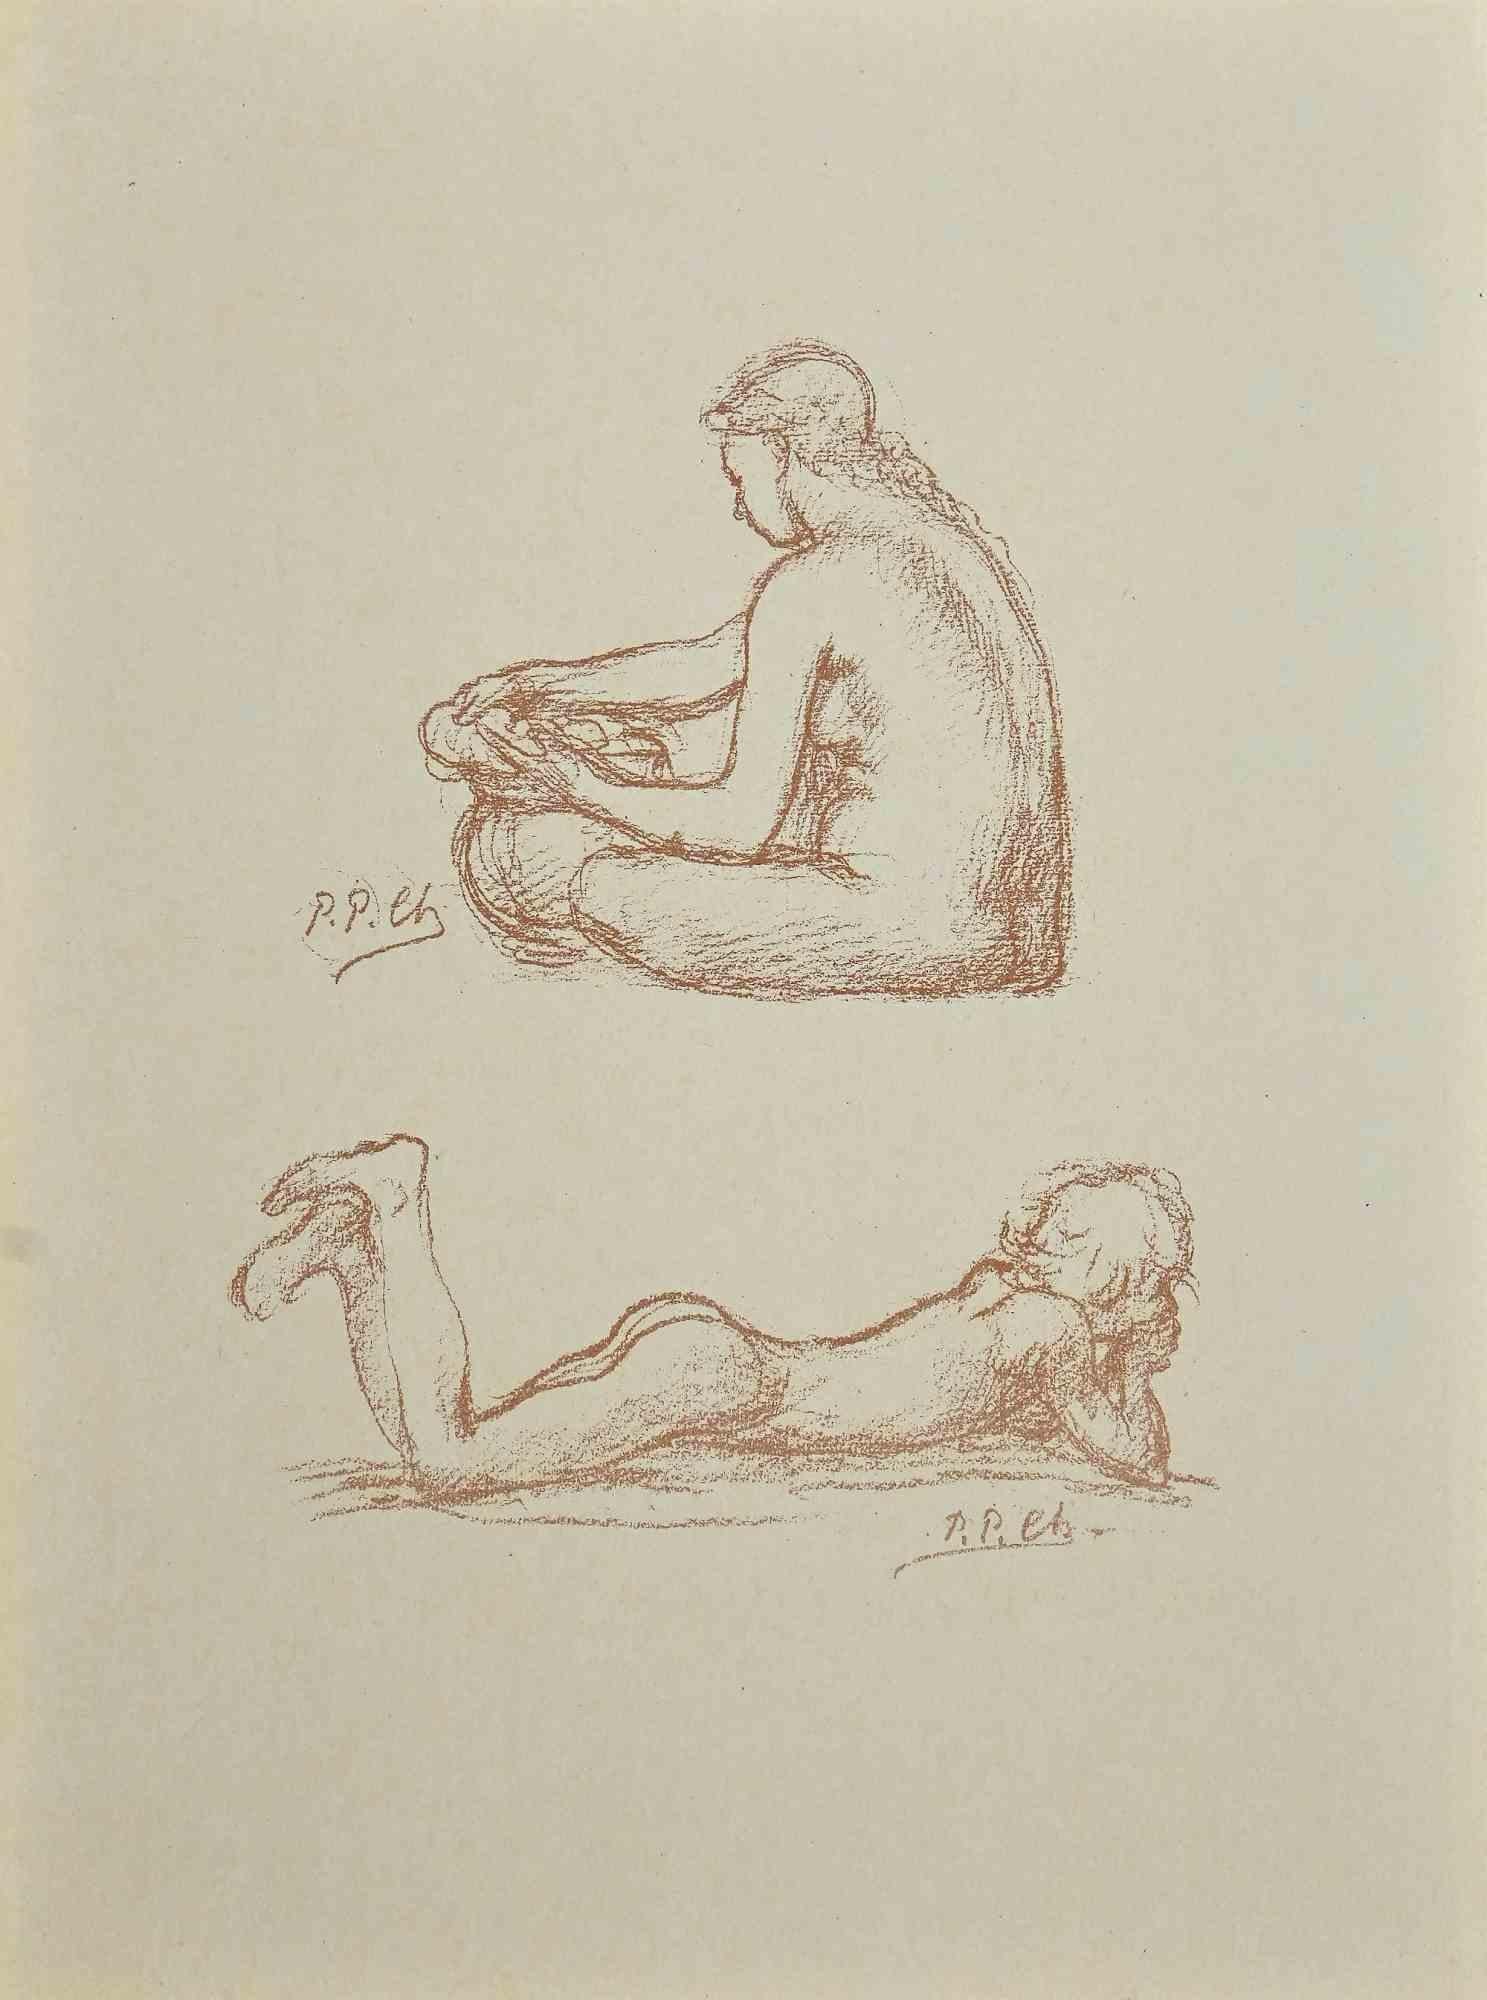 Pierre Puvis de Chavannes Figurative Print - Nudes - Original Lithograph by P. Puvis de Chavannes - Late 19th Century